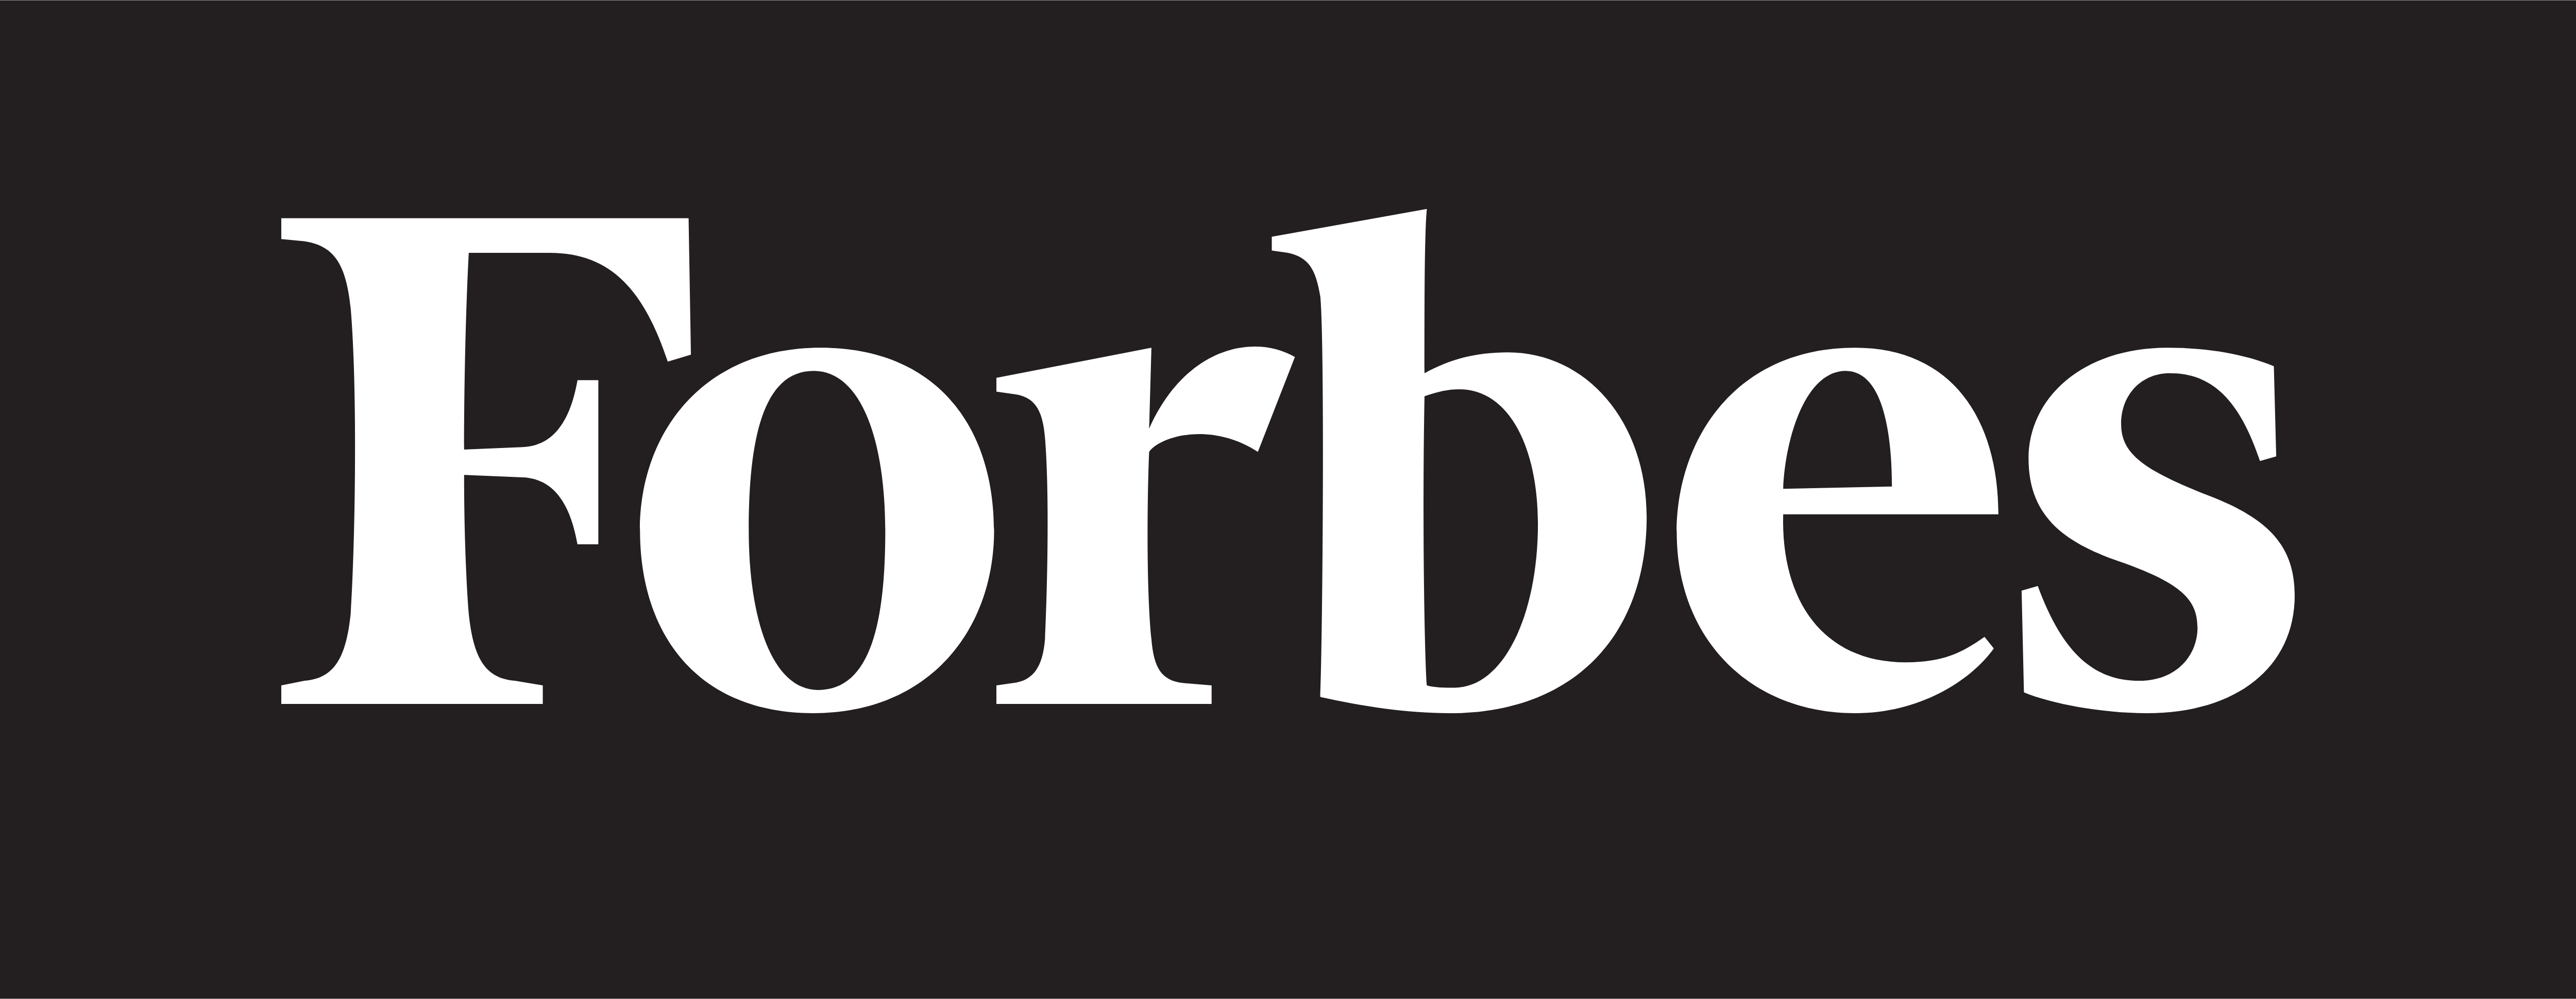 Forbes – pobierz logo